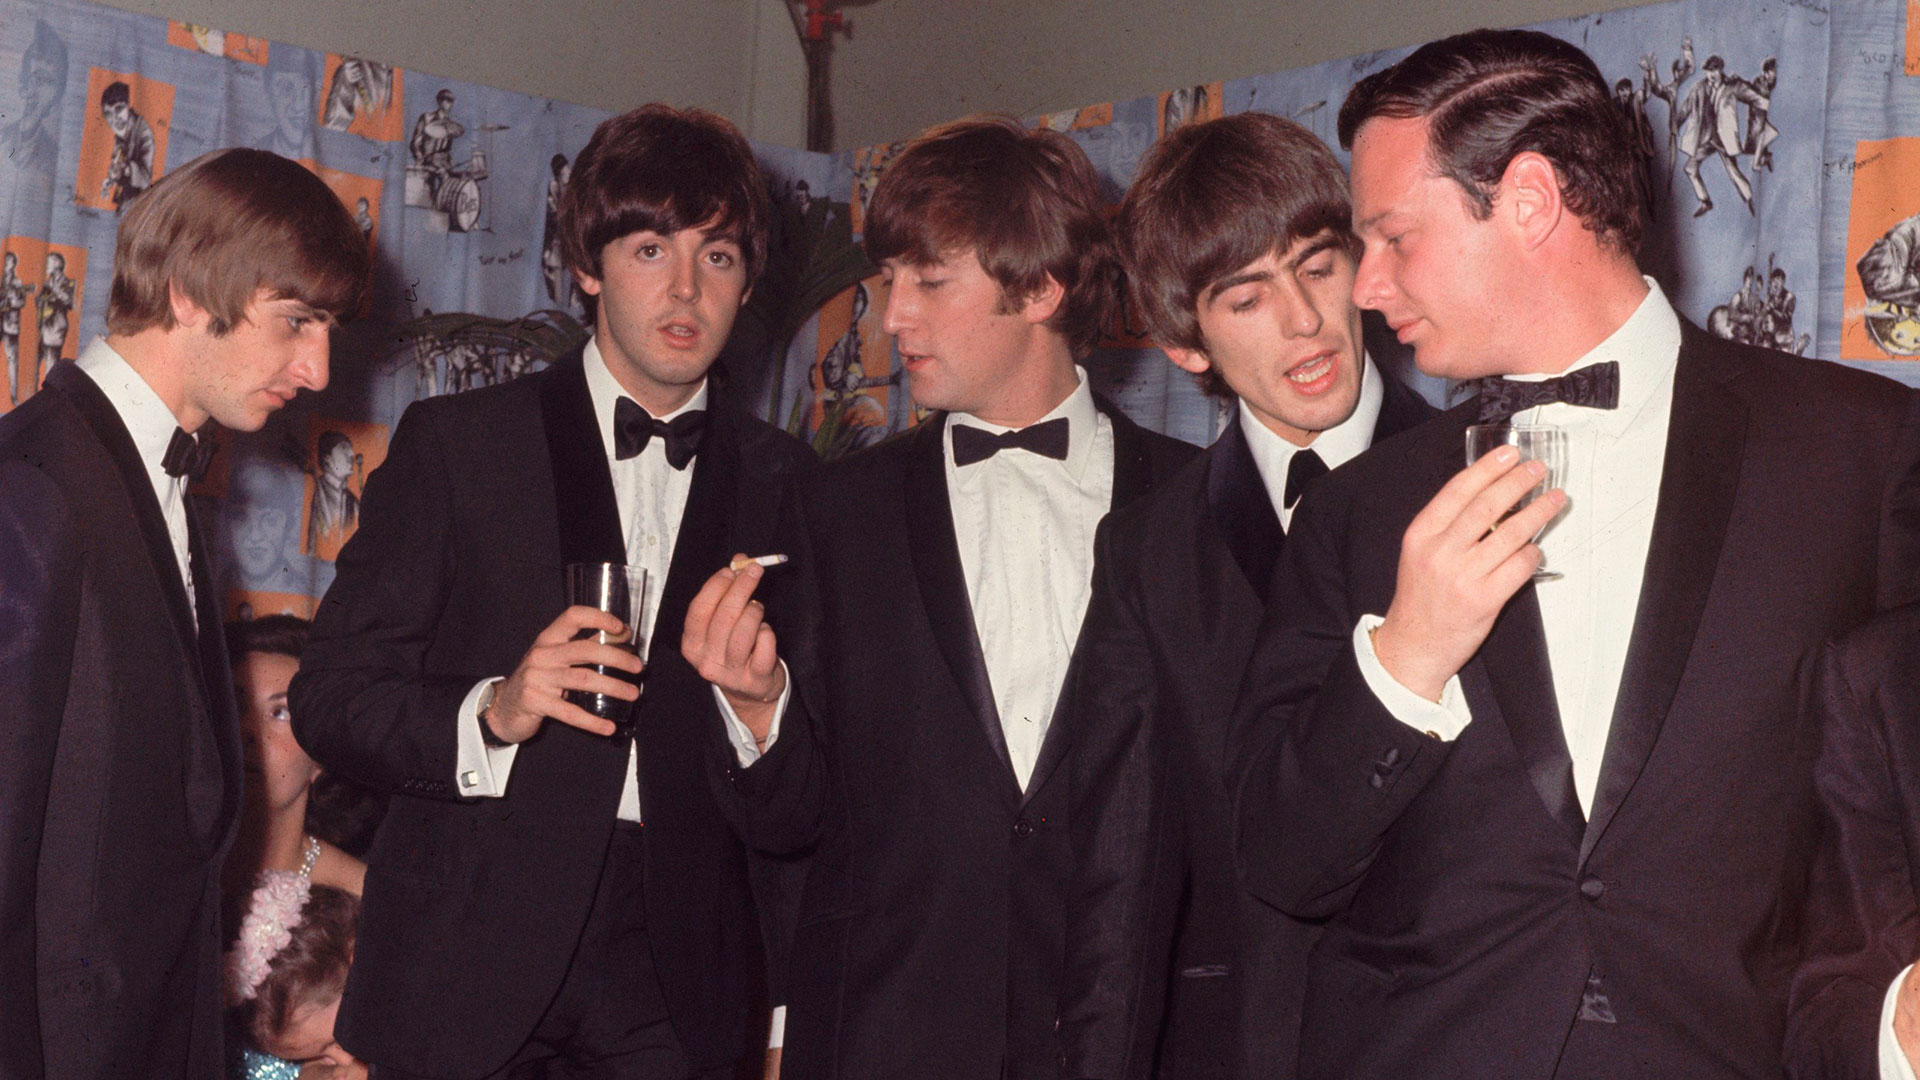 La muerte de Brian Epstein, manager de los Beatles: drogas, un supuesto romance con Lennon y versiones de suicidio - Infobae